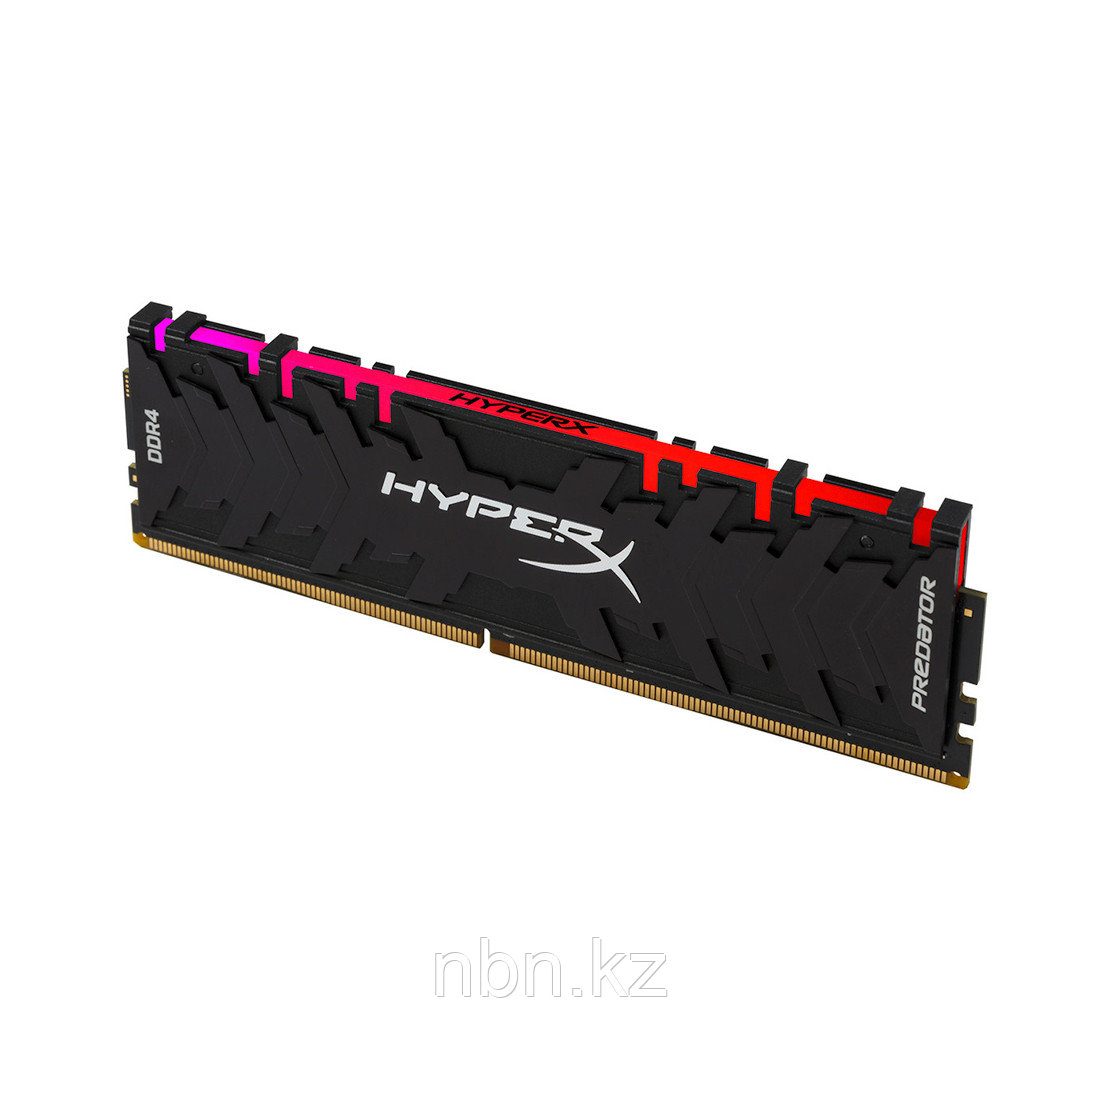 Модуль памяти Kingston HyperX Predator RGB HX432C16PB3A/16